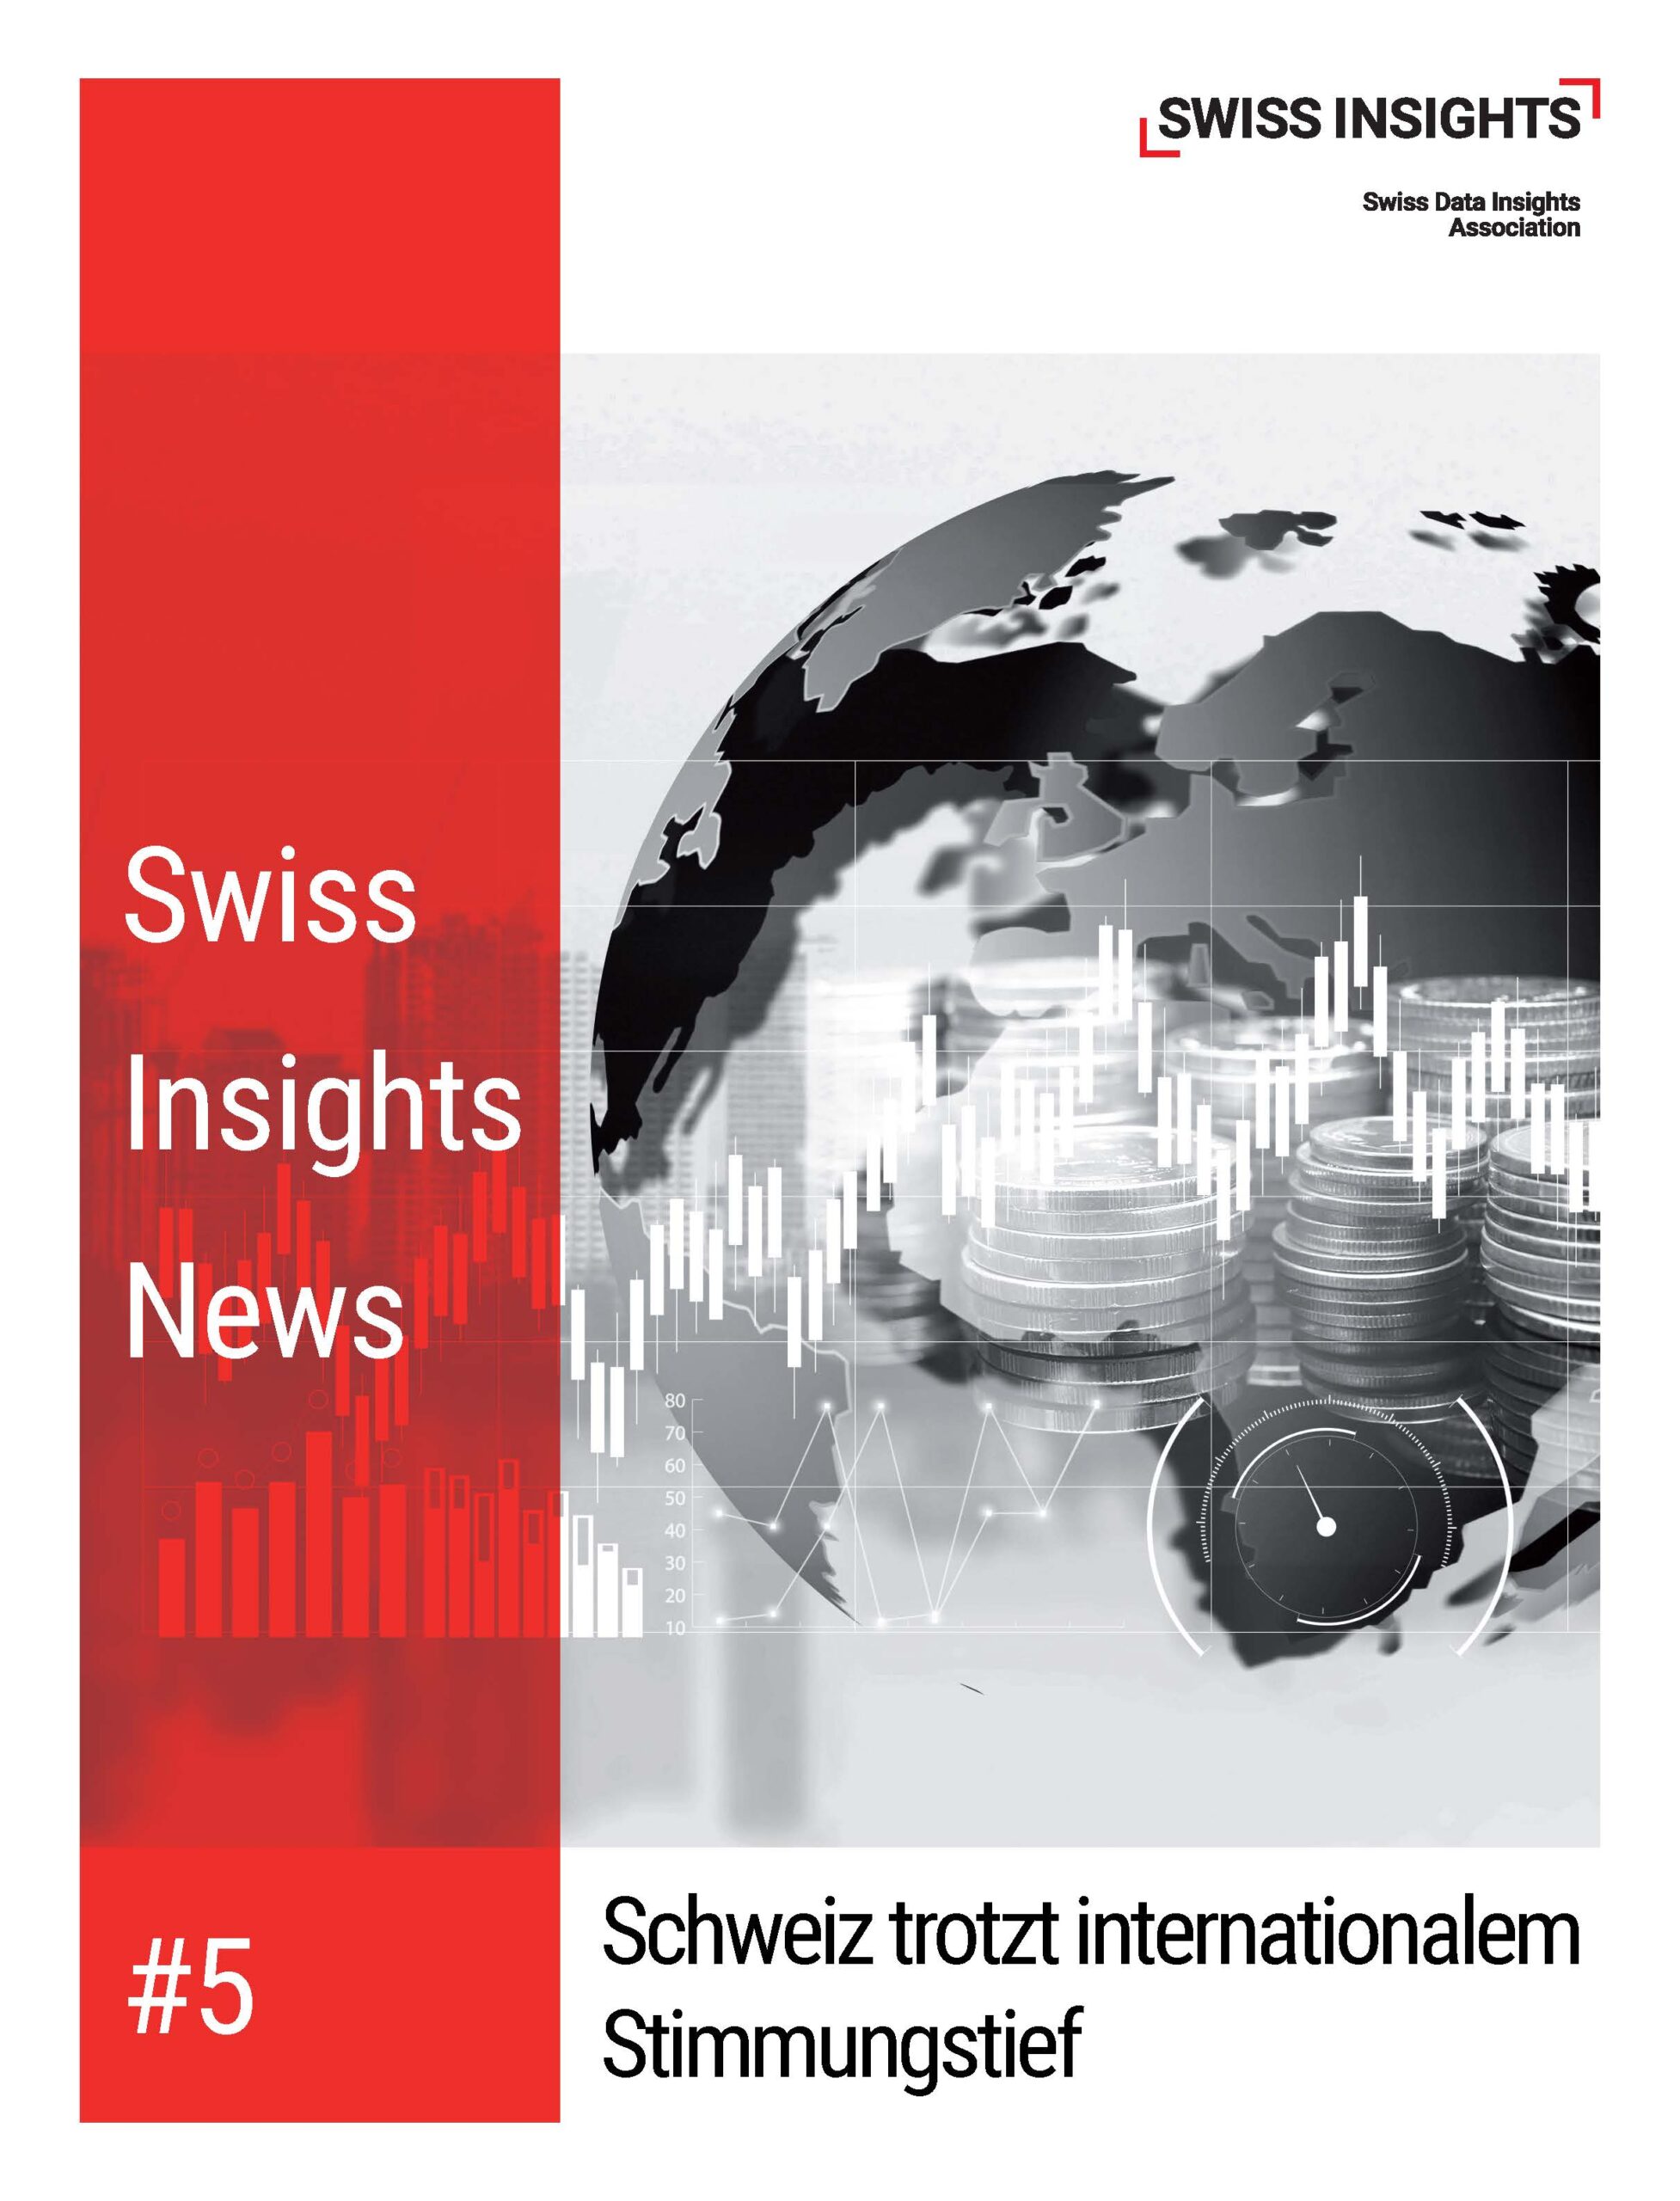 Die Schweiz trotzt dem internationalen Stimmungstief